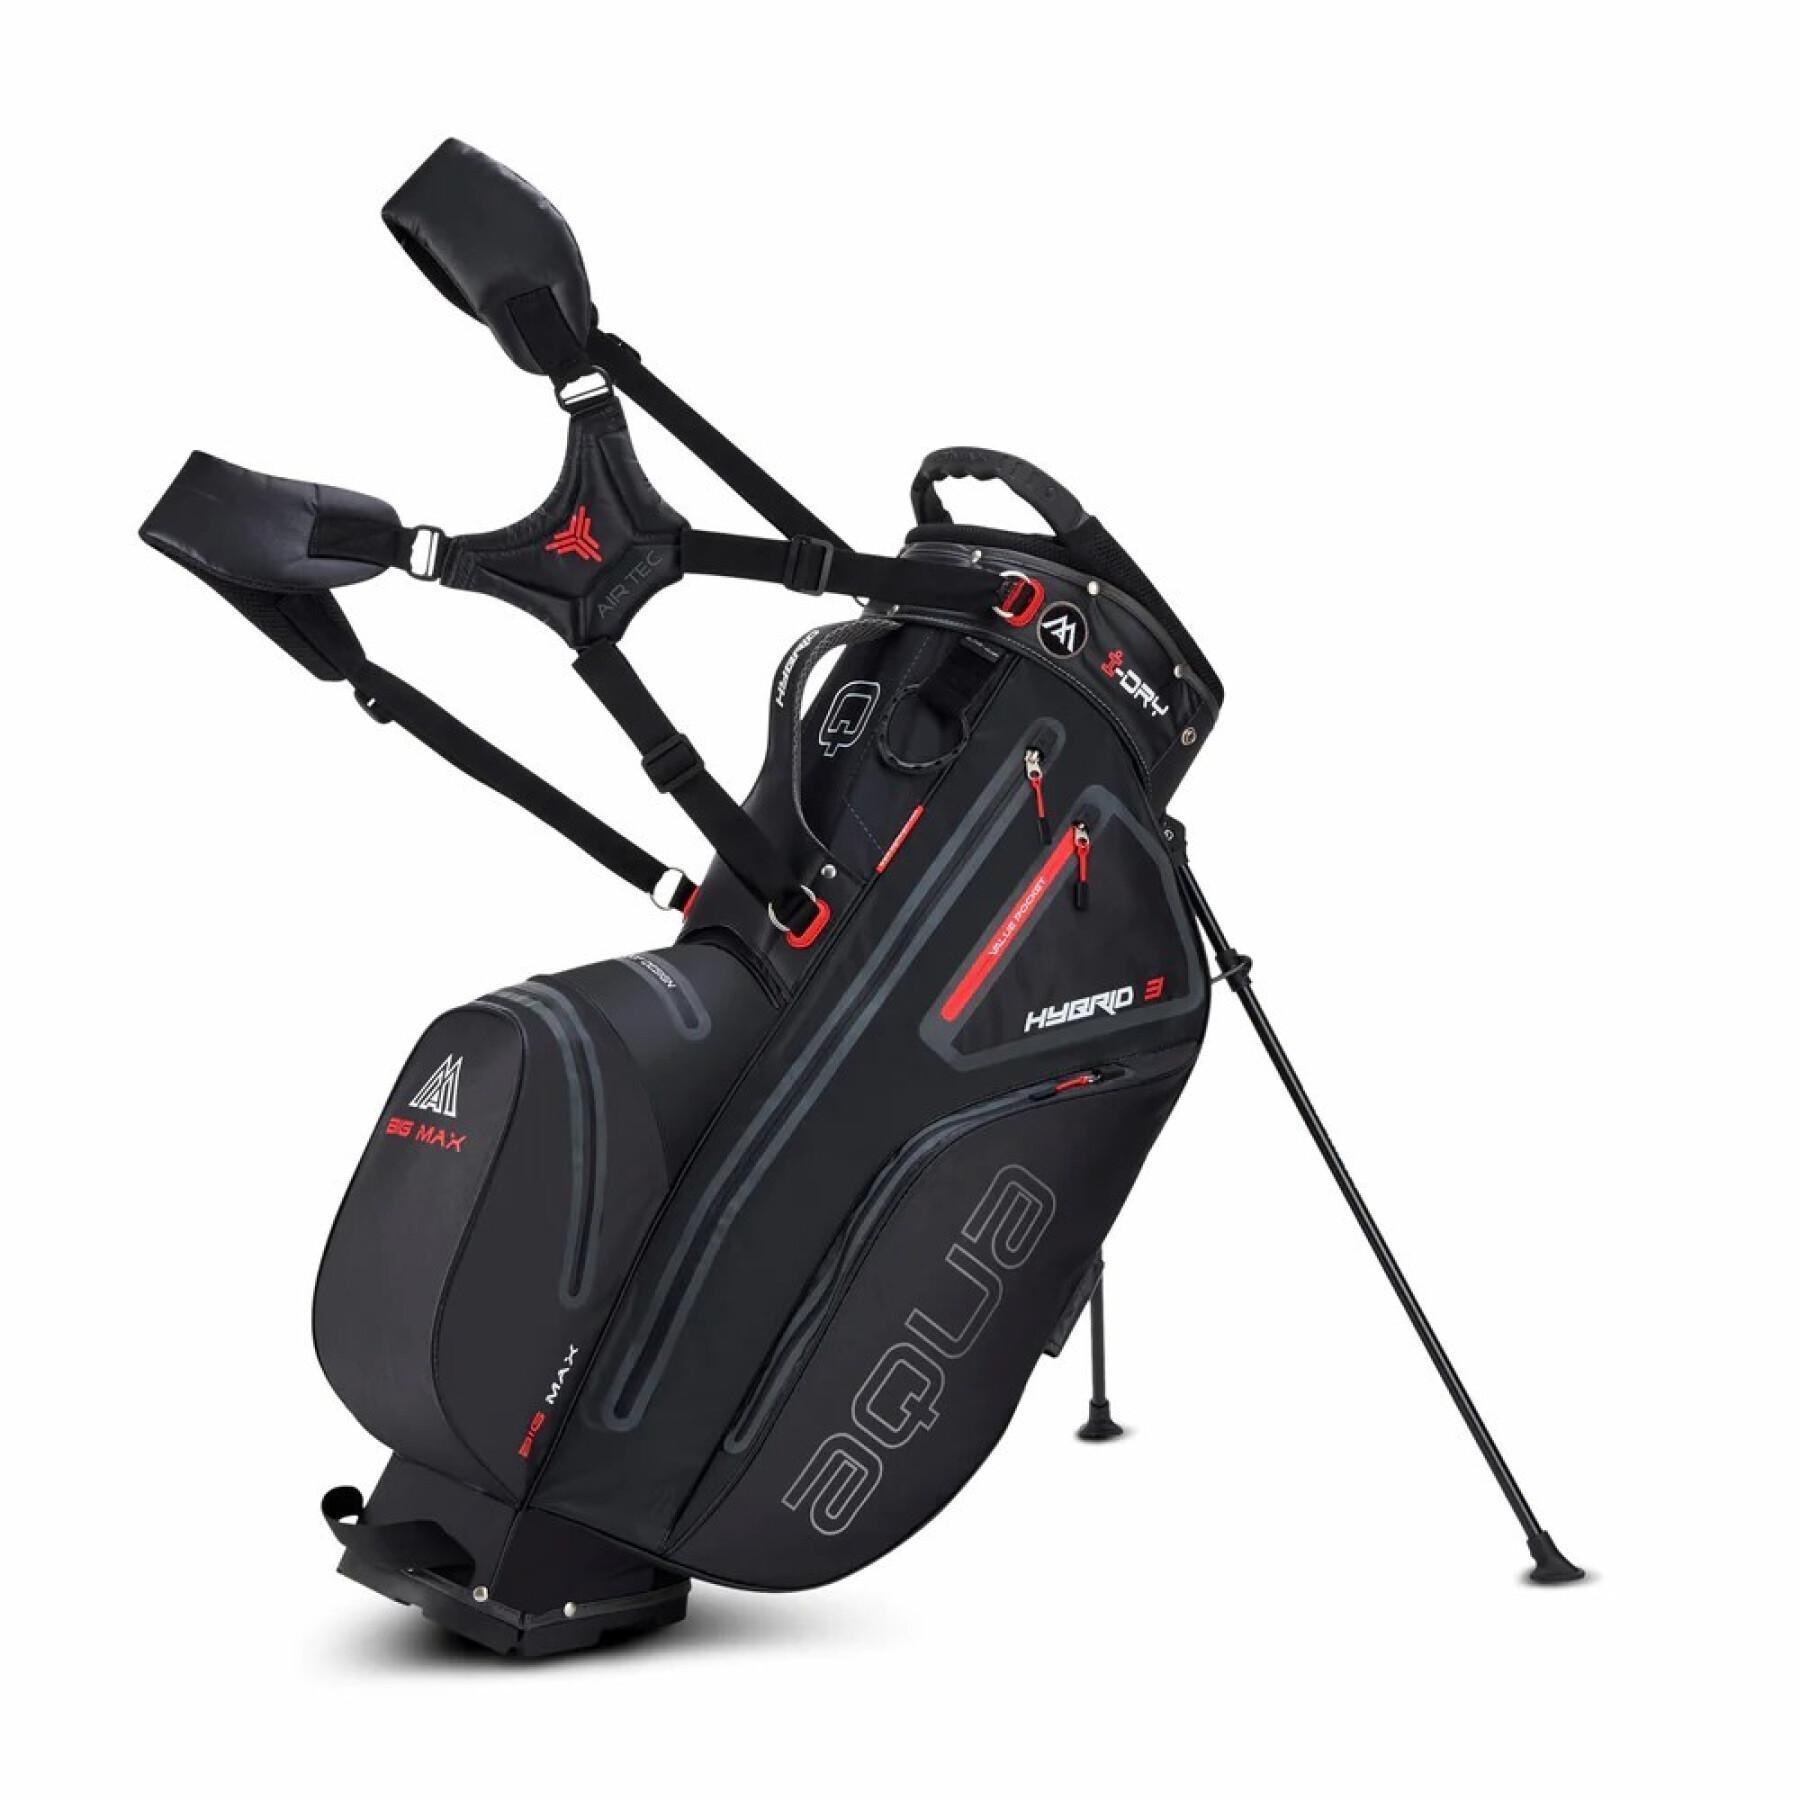 Golf bag Big Max Aqua Hybrid 3